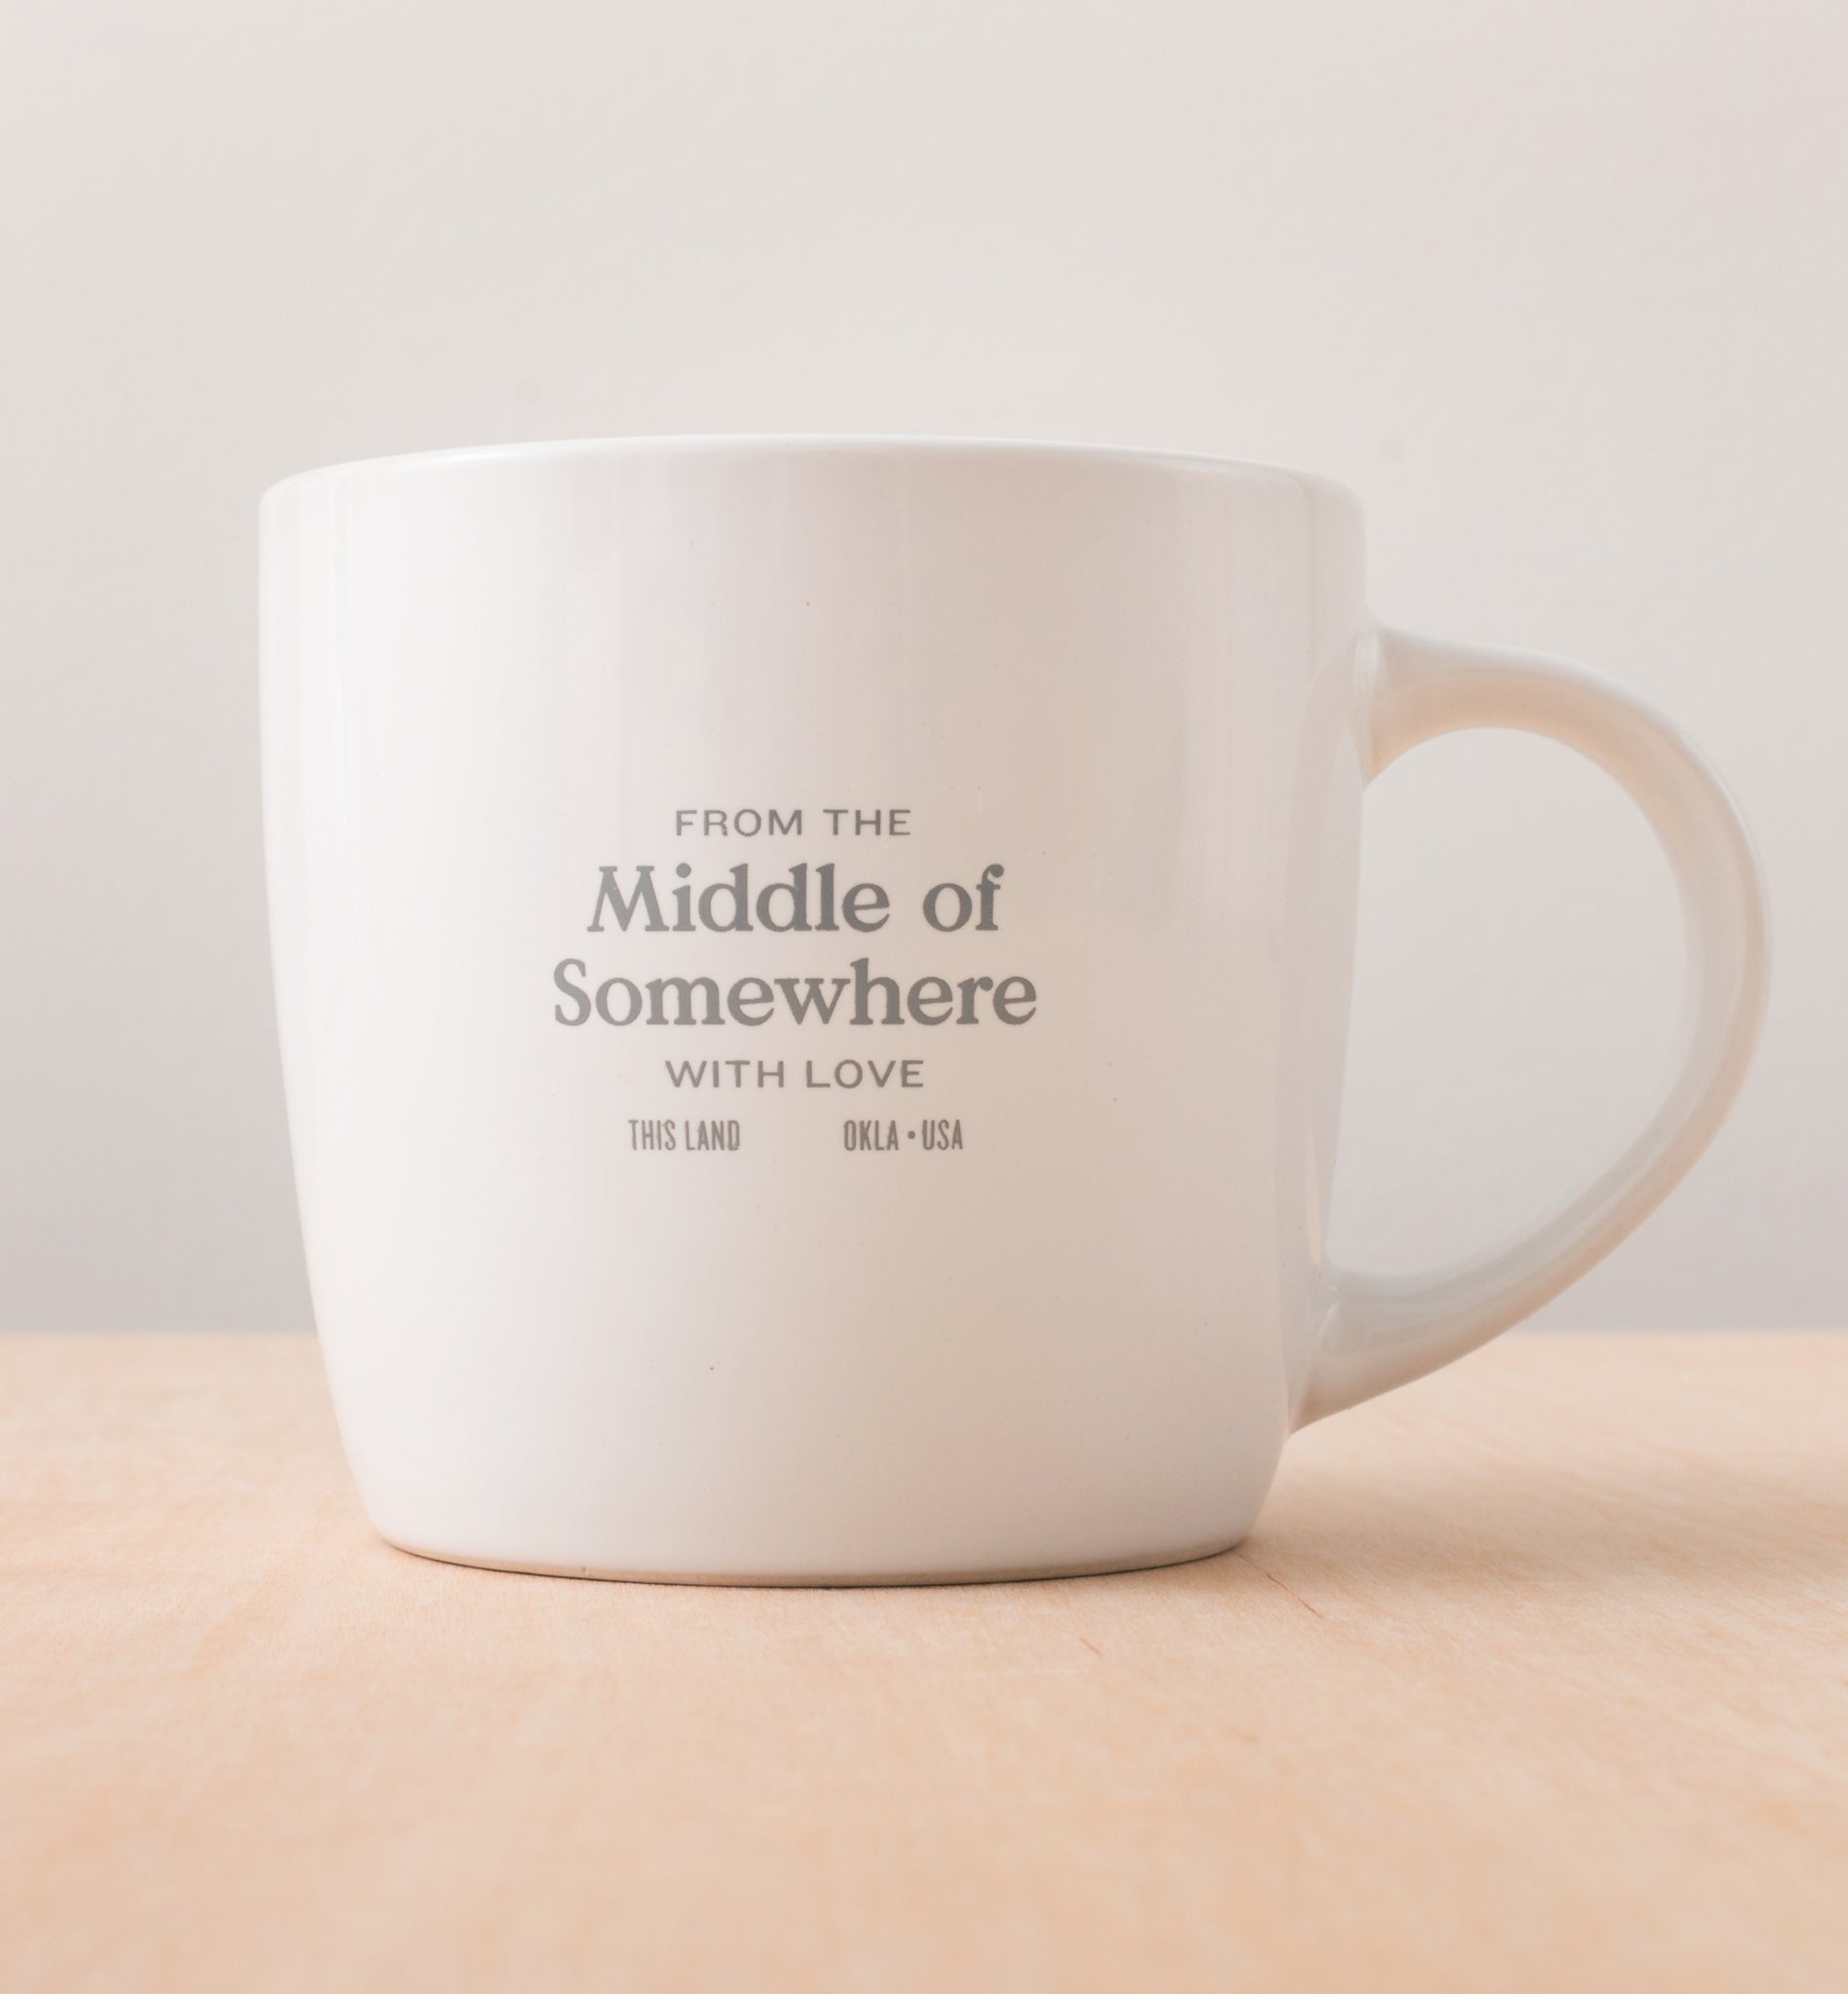 Middle of Somewhere Mug